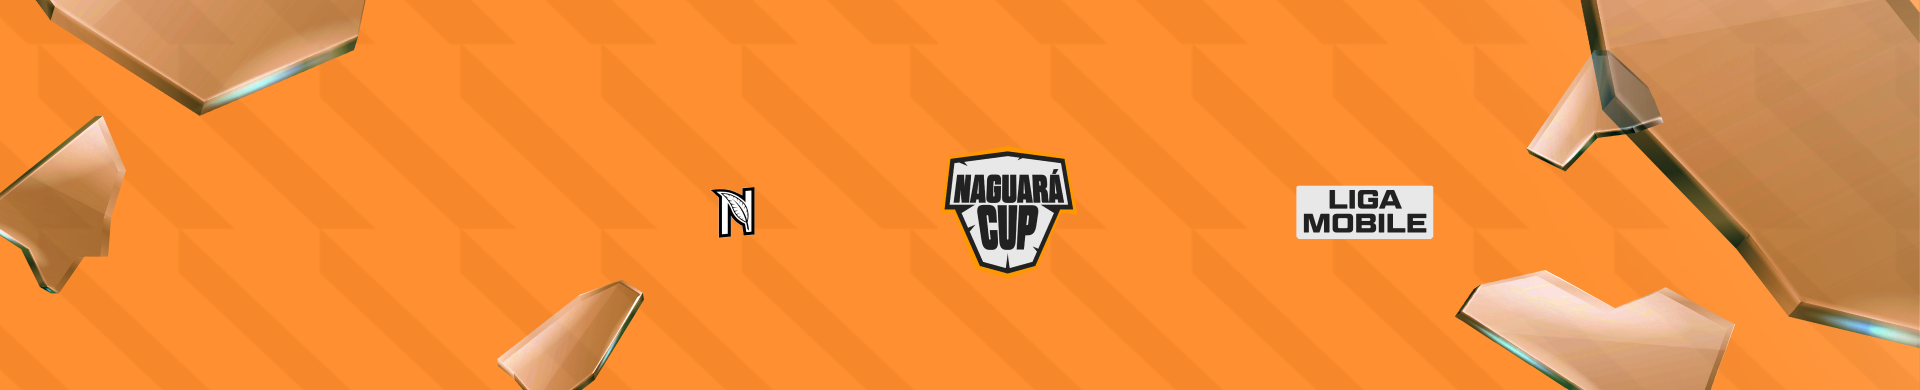 Naguará Cup Mobile - FreeFire - SAC